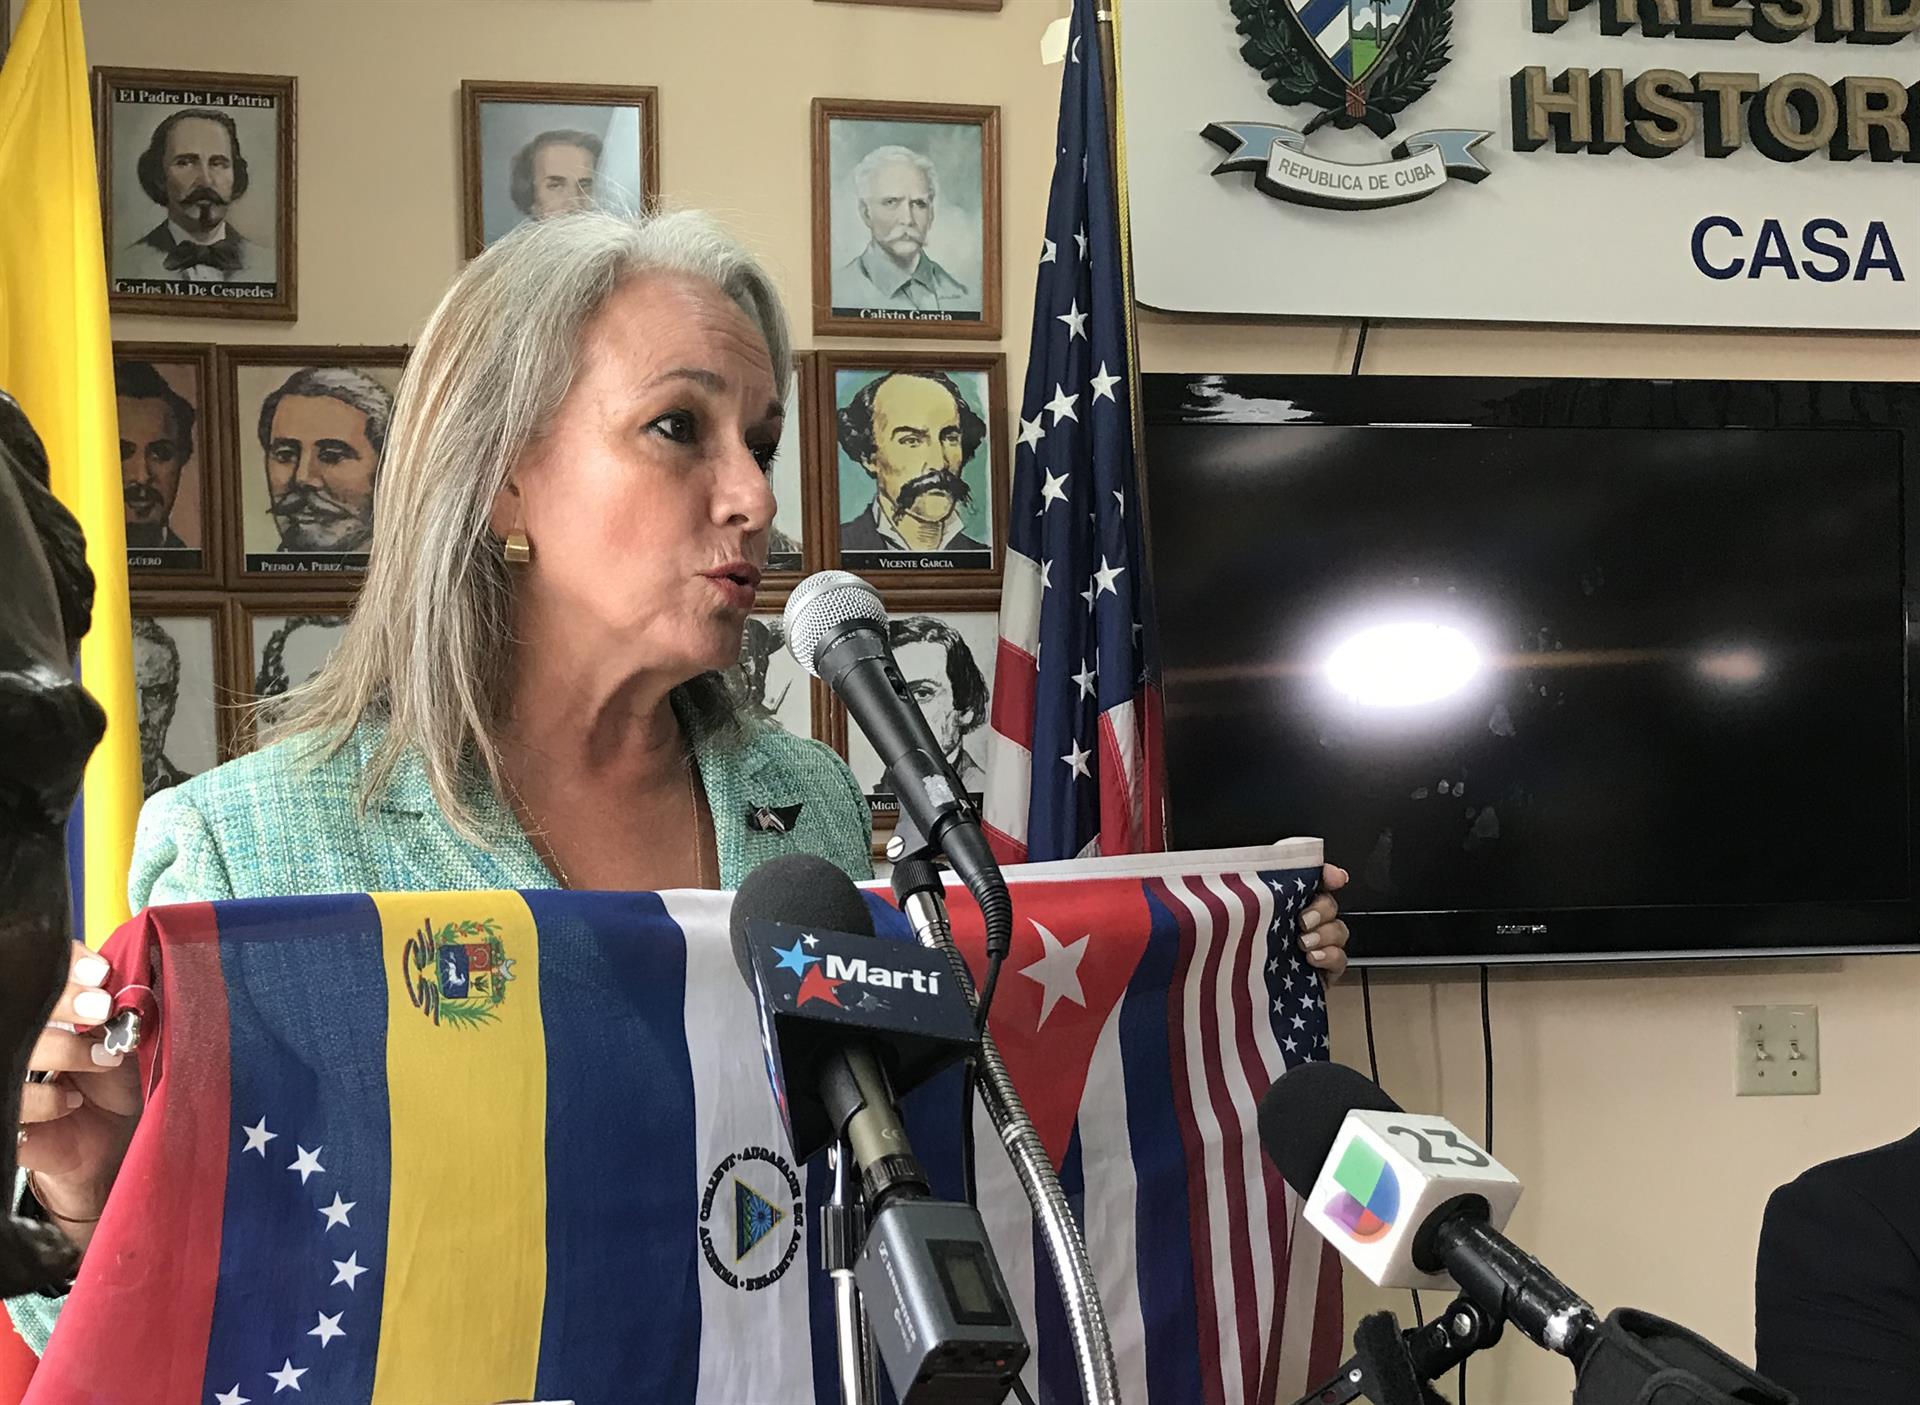 La presidenta de Nicaraguan American Republican Alliance, Muñeca Fuentes, habla durante un acto este miércoles en la Casa del Preso, sede del Presidio Político Histórico Cubano en Miami, Florida (EE.UU.). EFE/ Ana Mengotti
